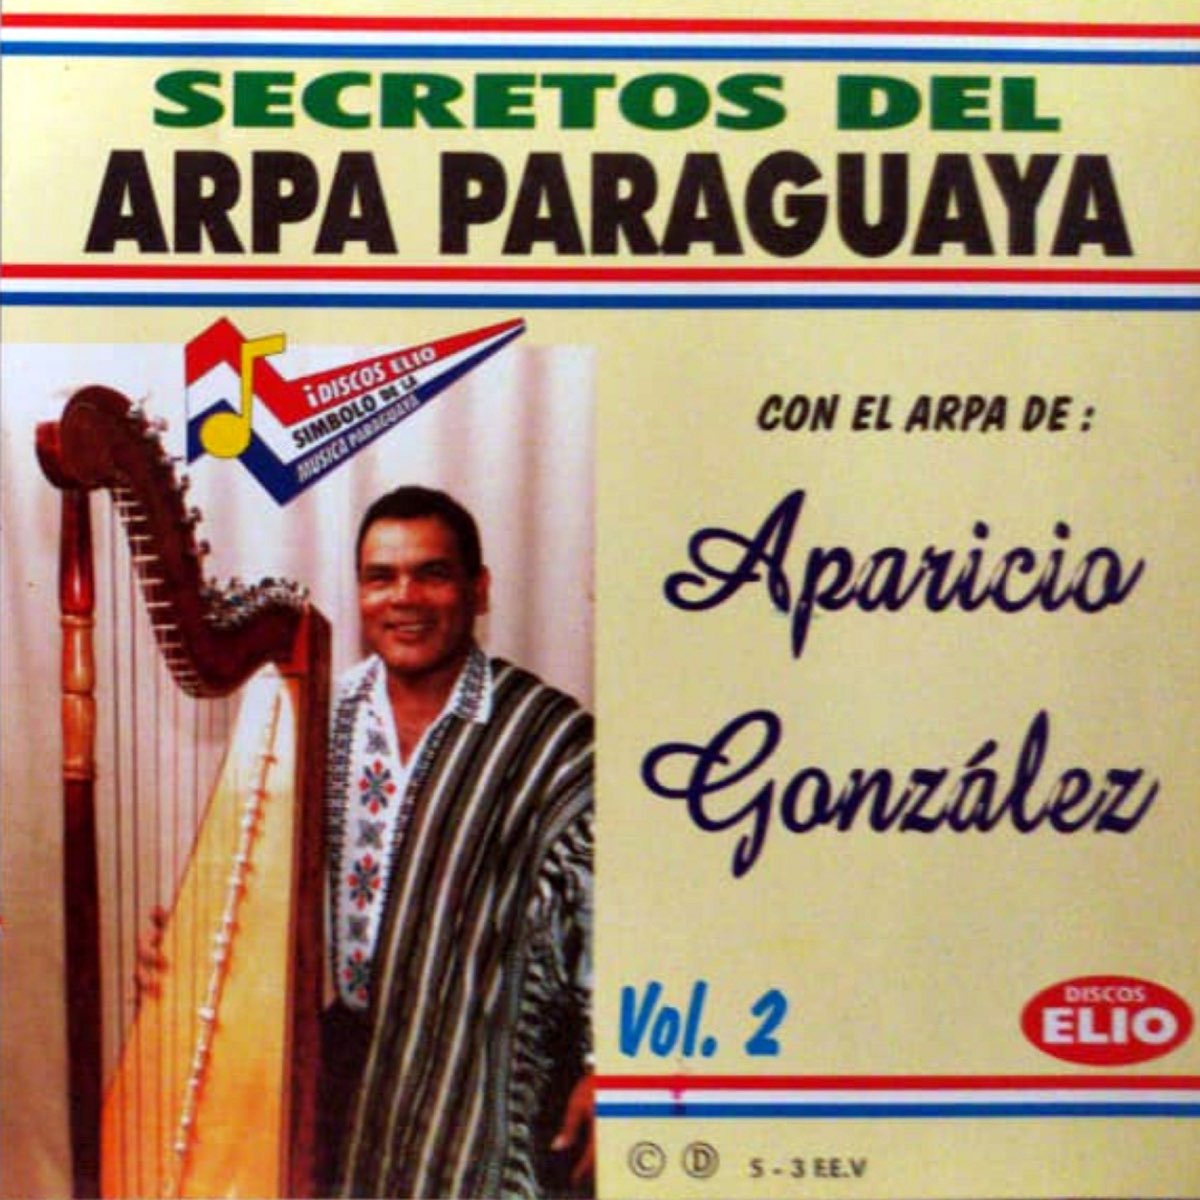 Secretos del Arpa Paraguaya by Aparicio Gonzalez on Apple Music